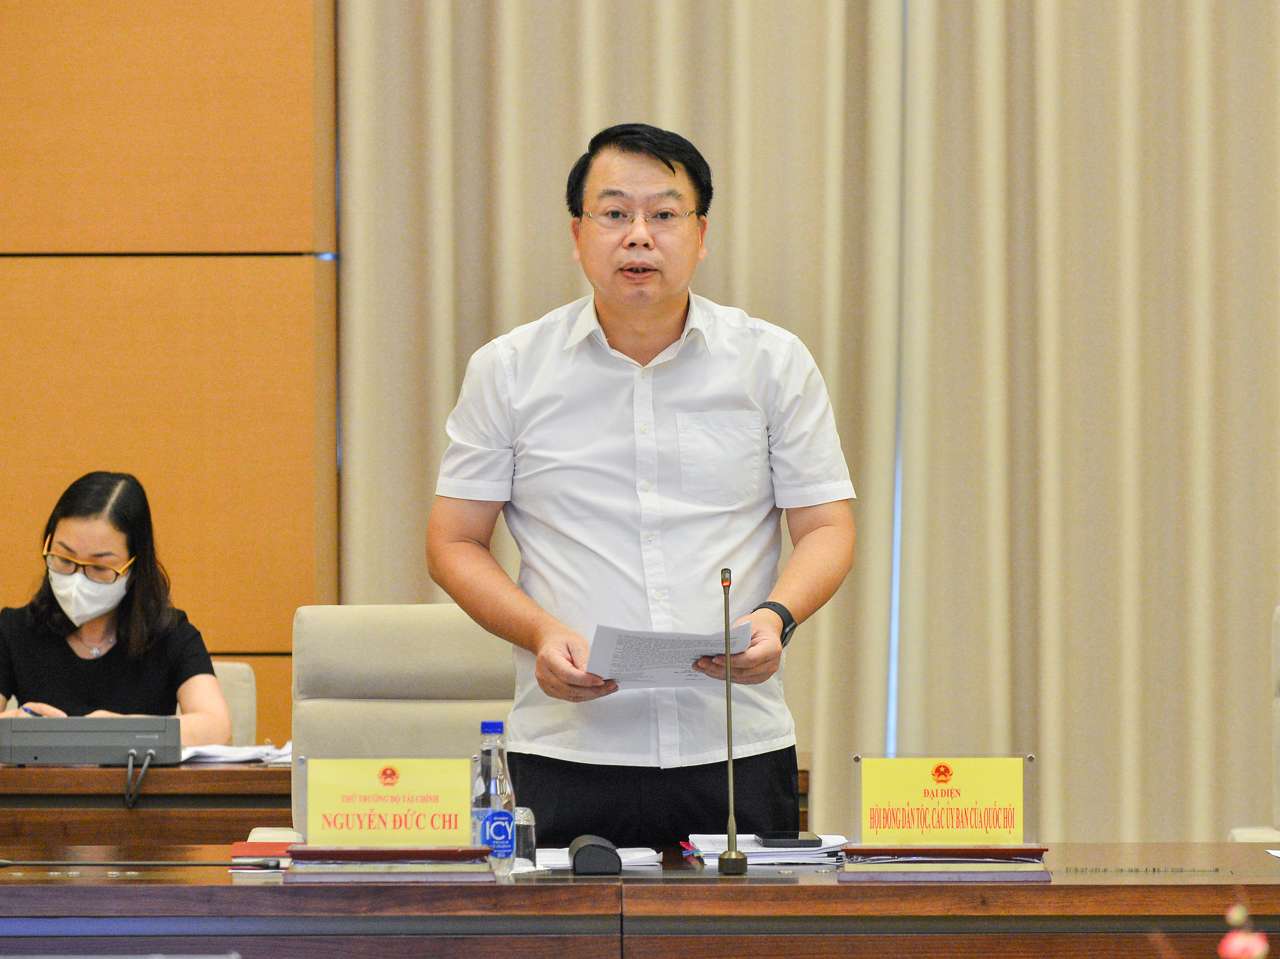 Thứ trưởng Bộ Tài chính Nguyễn Đức Chi đảm trách thêm nhiệm vụ thay một Thứ trưởng vừa nghỉ hưu - Ảnh 1.